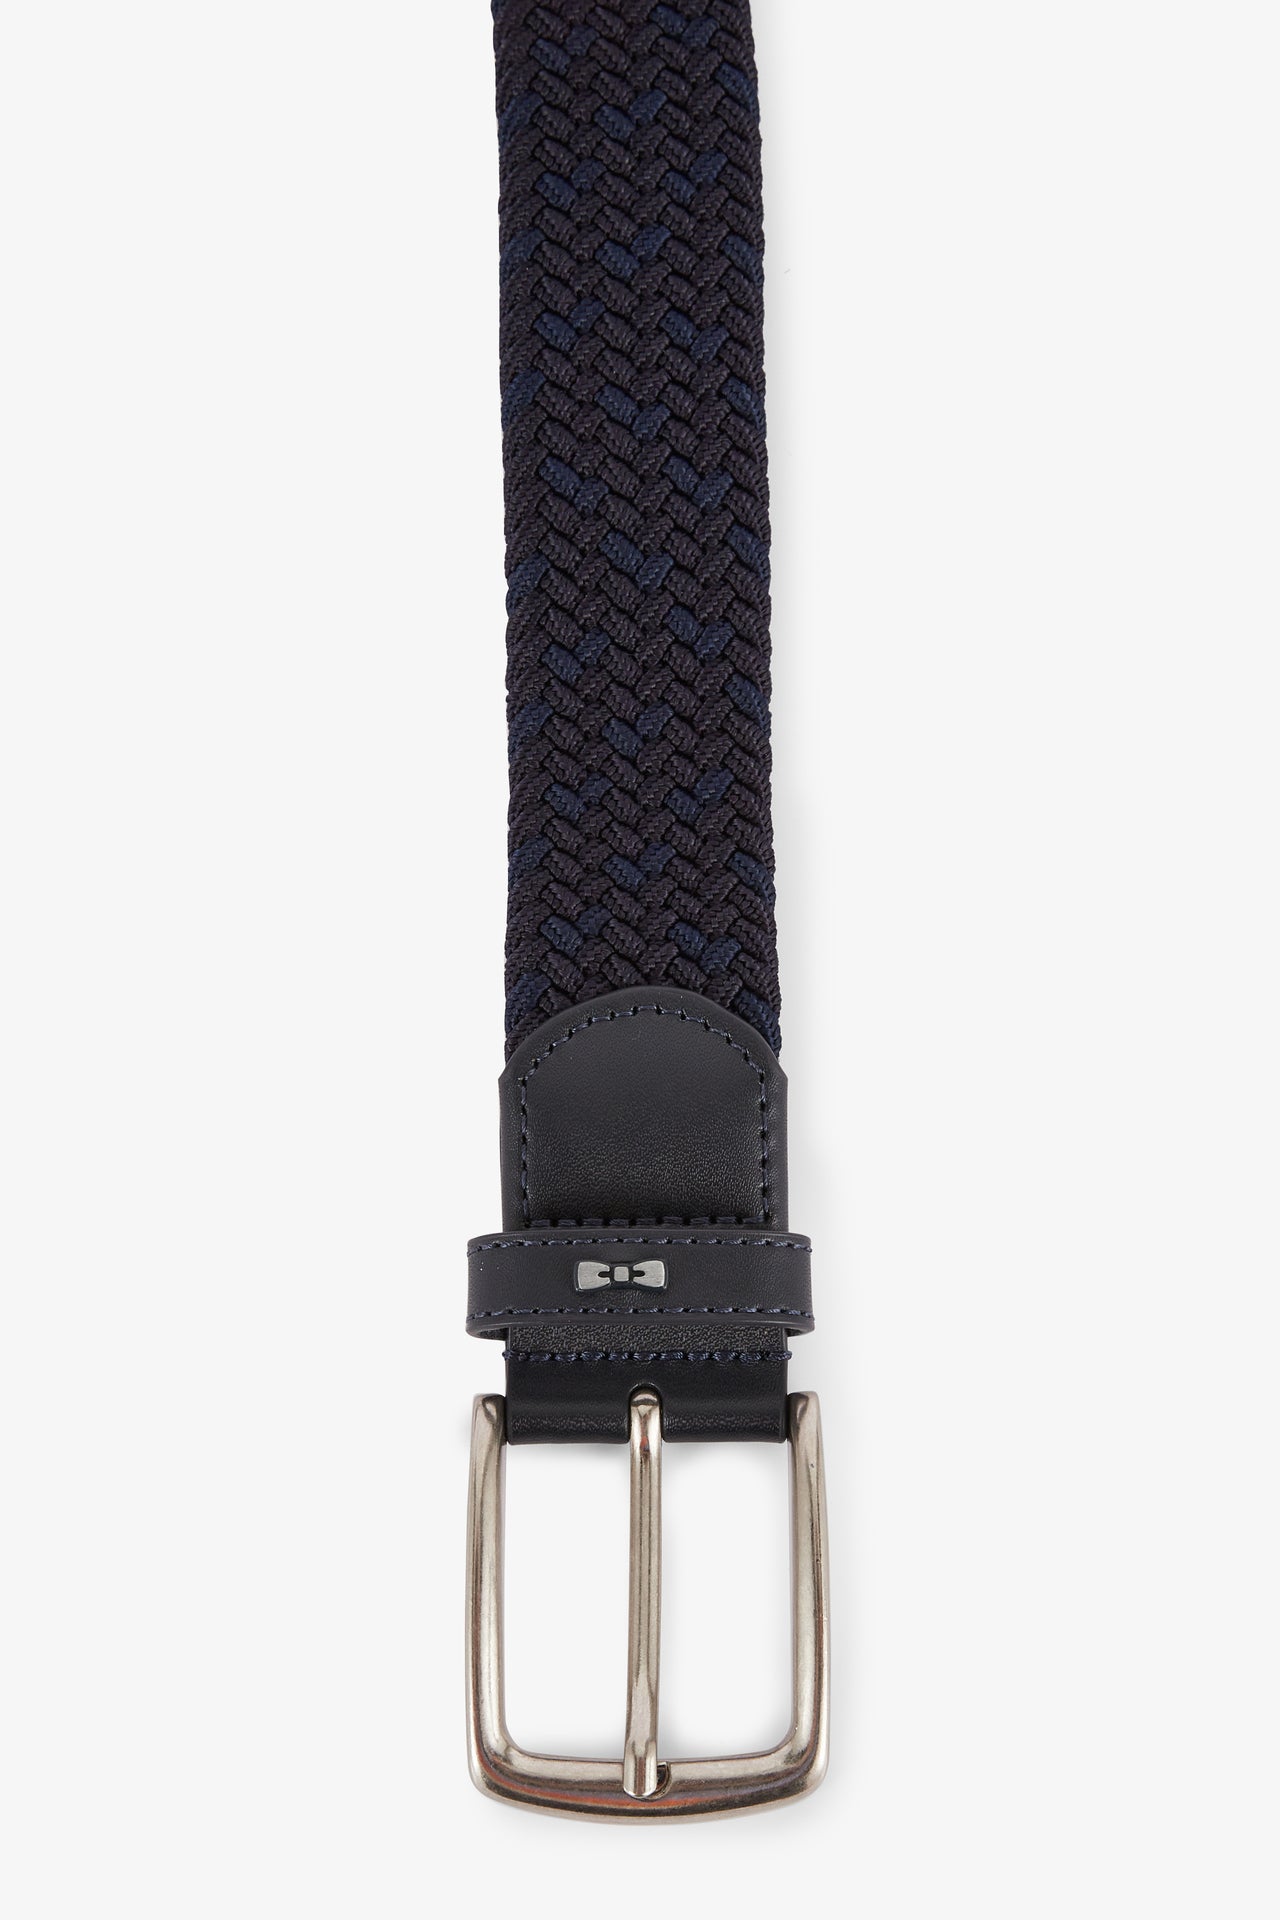 Navy blue braided belt